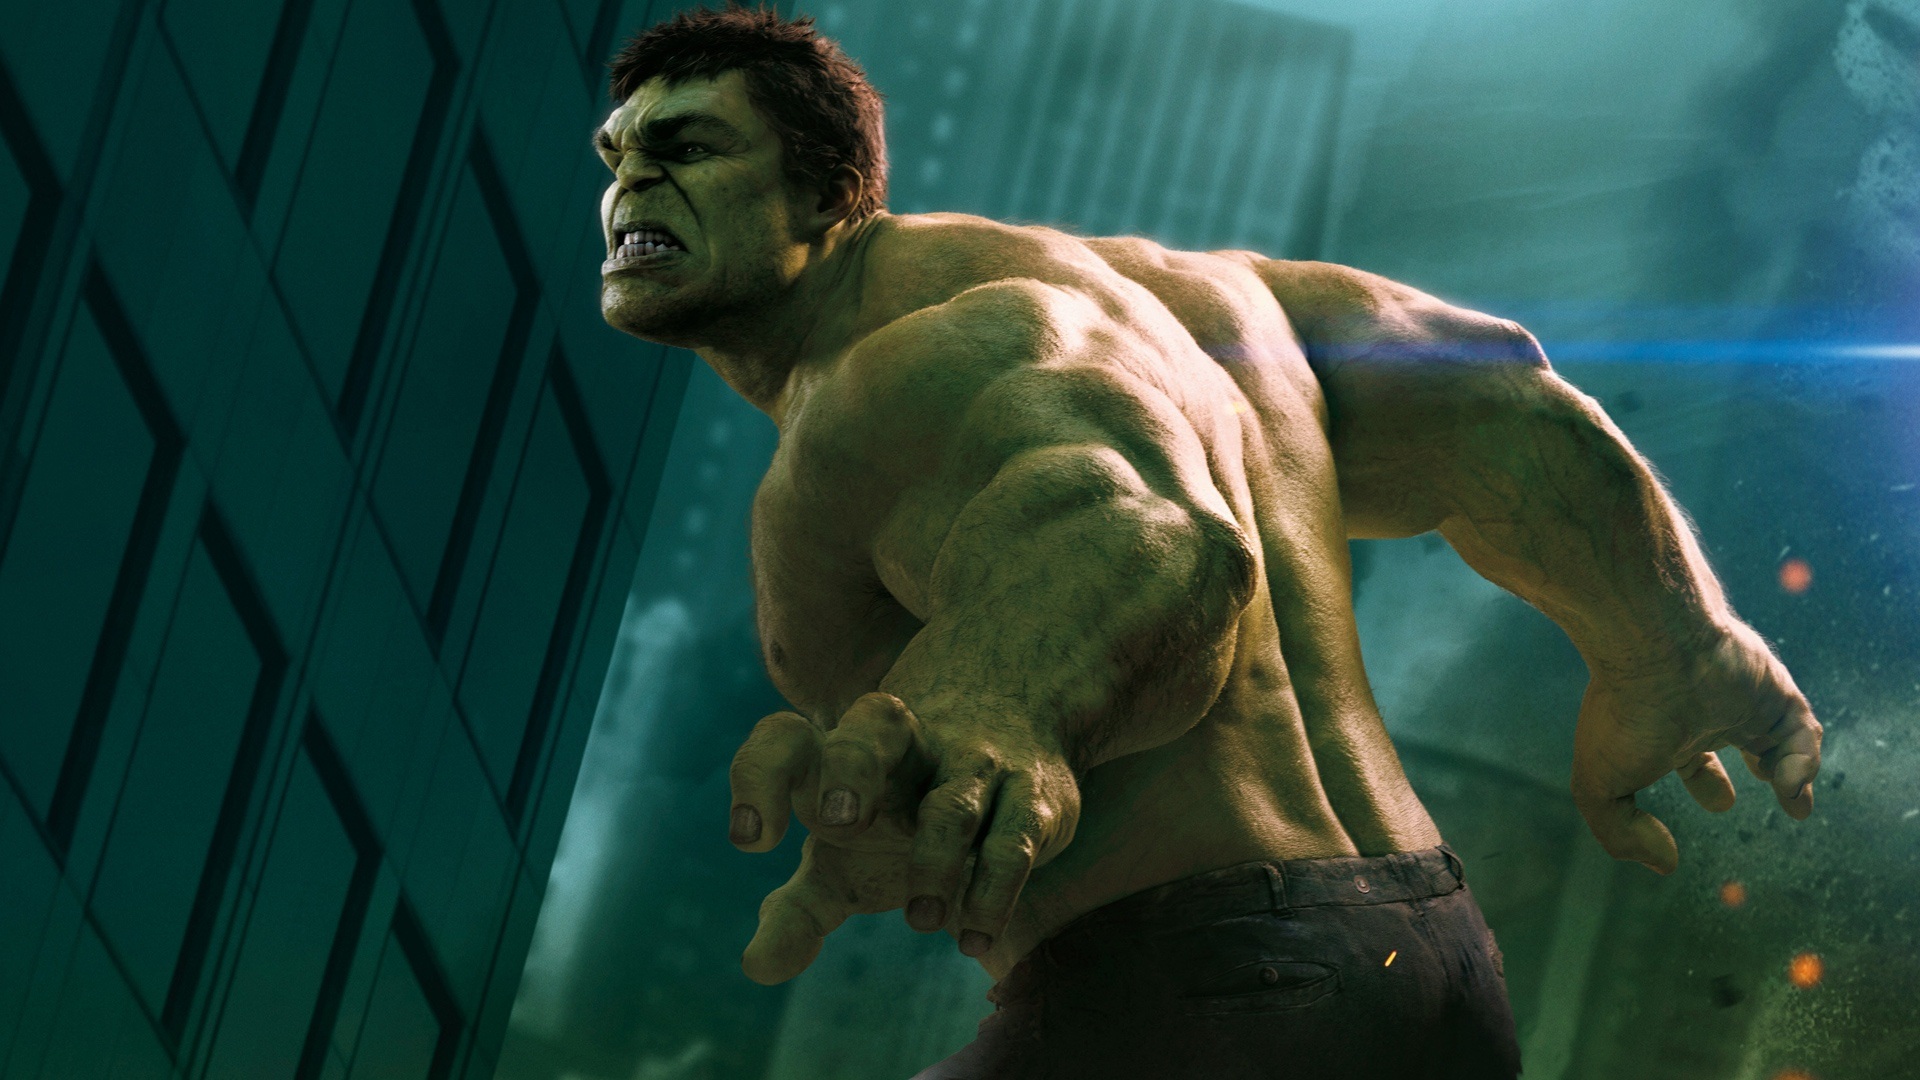 marvels, The, Avengers, Superhero, Hulk Wallpaper